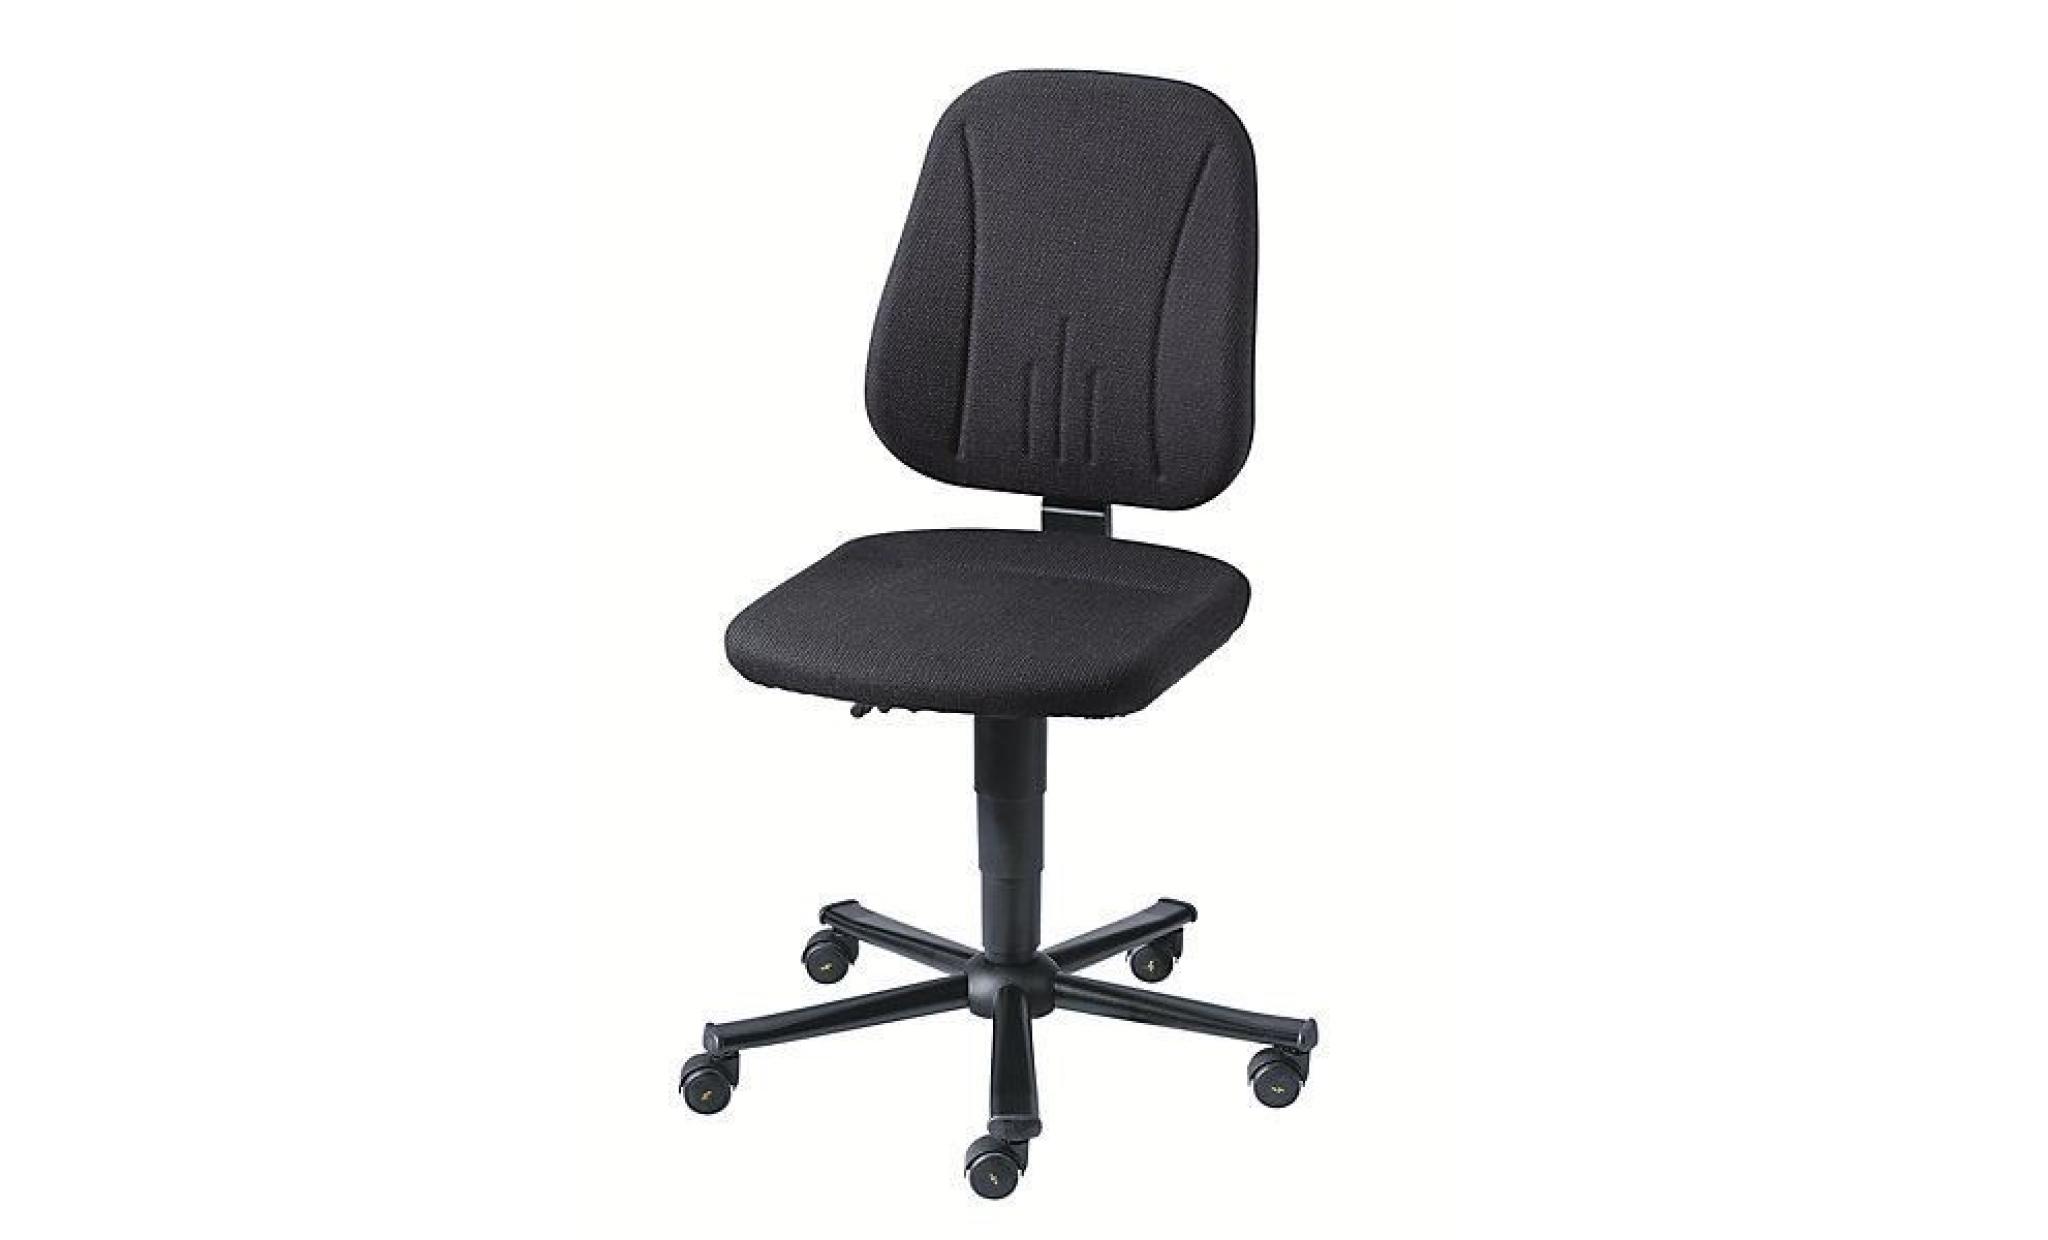 bimos siège d'atelier antistatique   habillage tissu noir, piétement à cinq branches en tube d'acier avec roulettes   chaise chaise pas cher